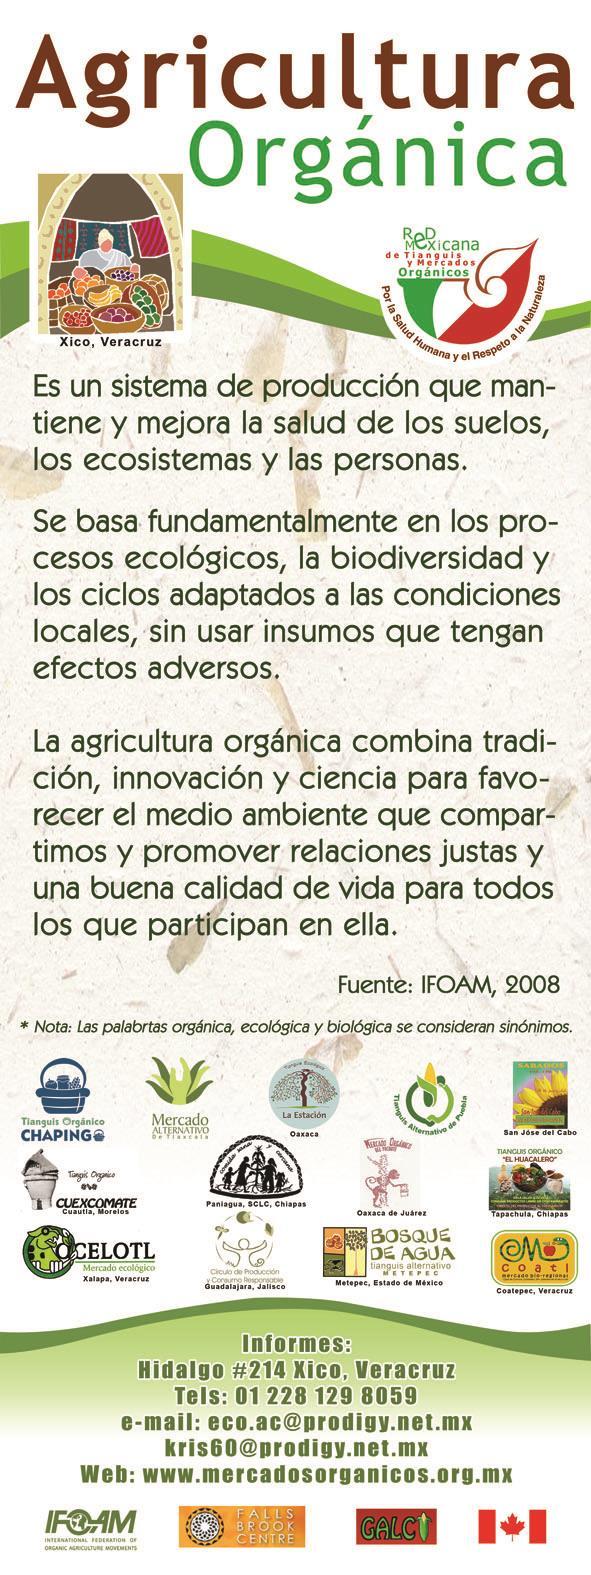 Sistema de Certificación Orgánica Participativa Esquema para garantizar a los consumidores la integridad orgánica de los alimentos que se ofrecen.